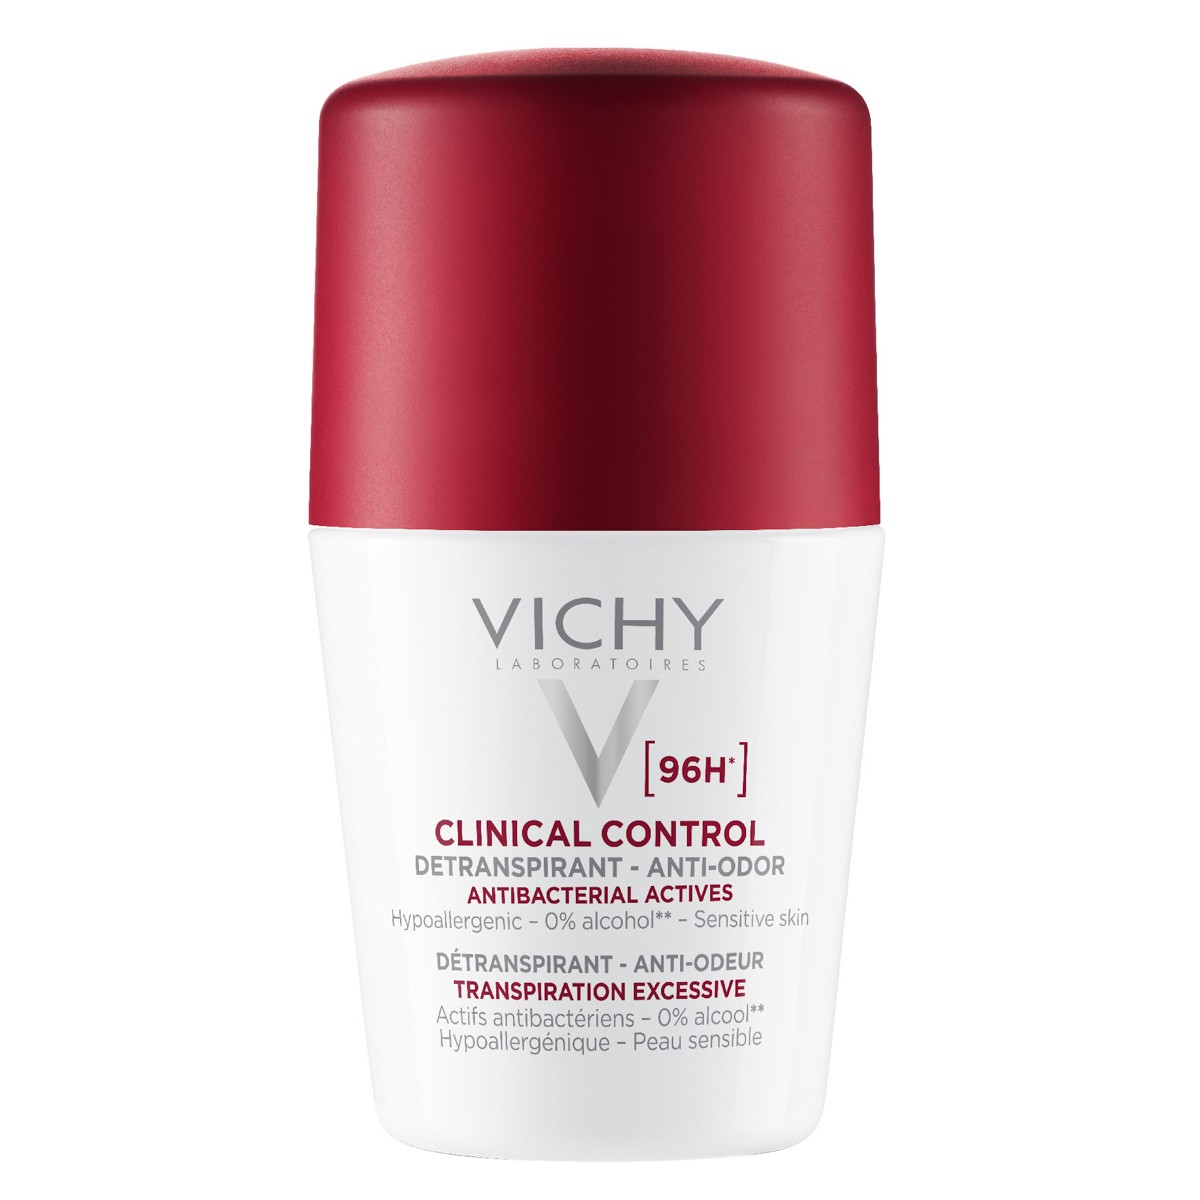 Imagen de Vichy desodorante clinical control 96h 50m